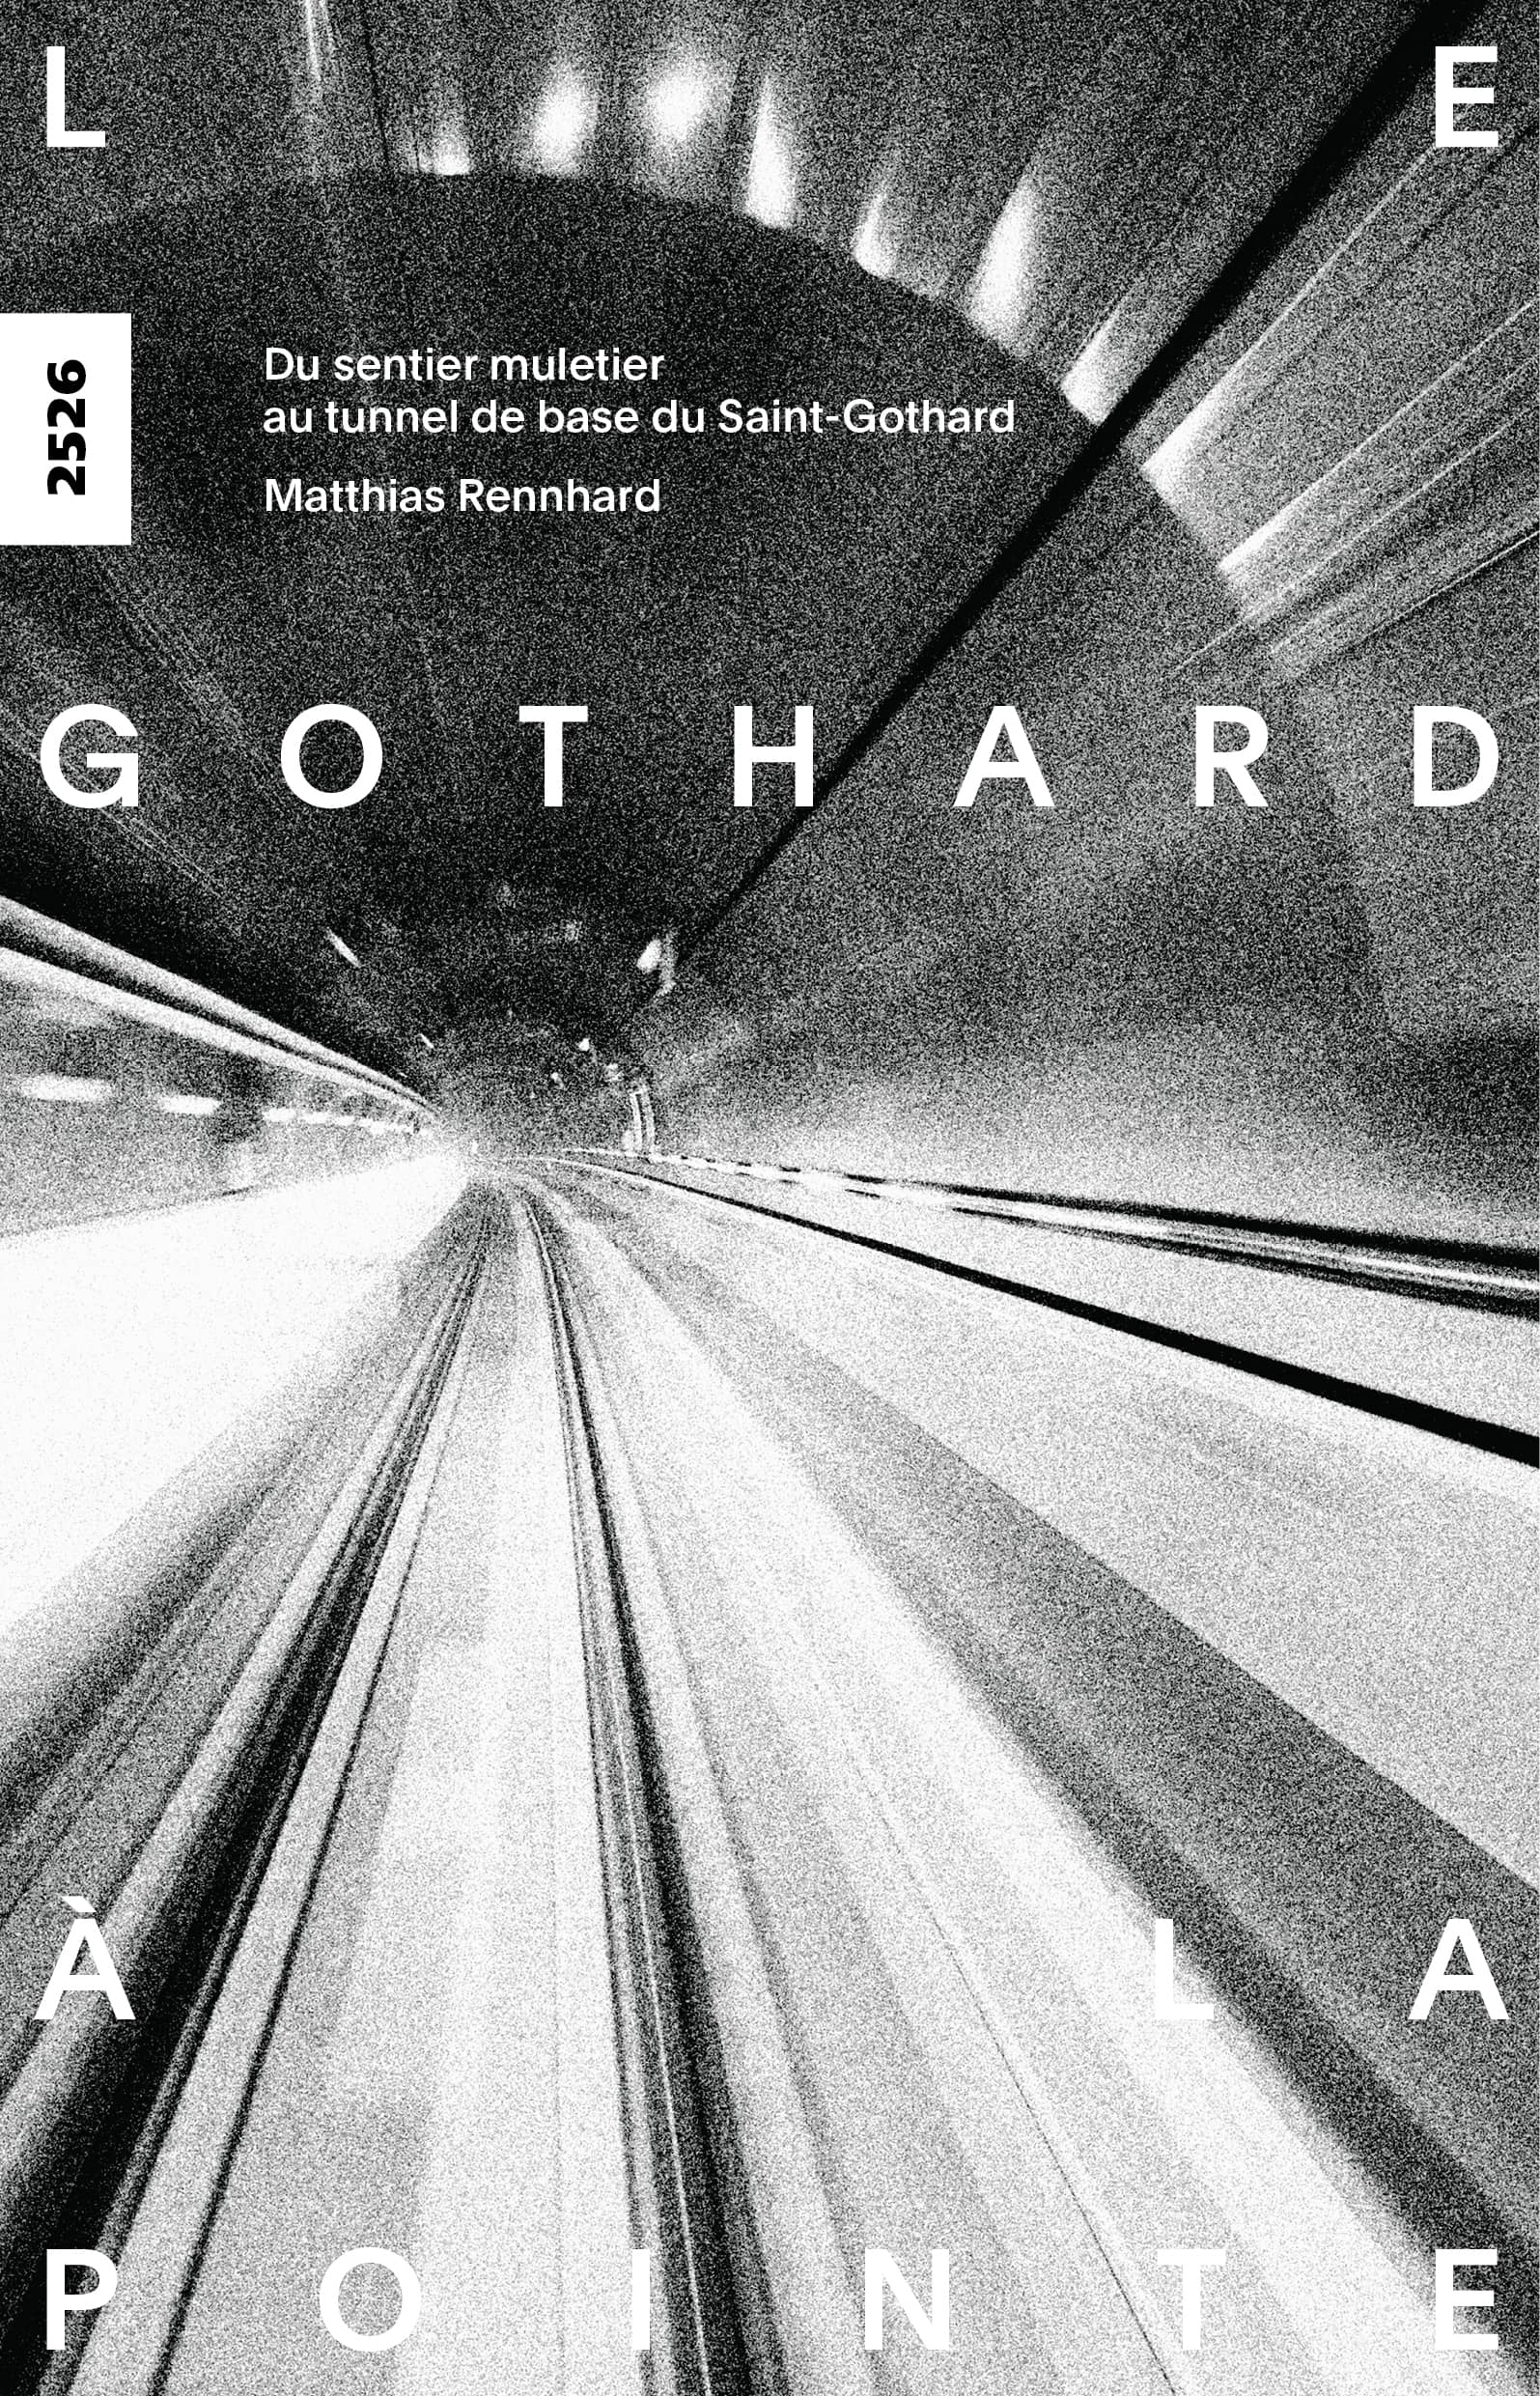 Le Gothard, à la pointe, un livre de Matthias Rennhard, illustré par Roland Hausheer, éditions de l'OSL, histoire, Suisse